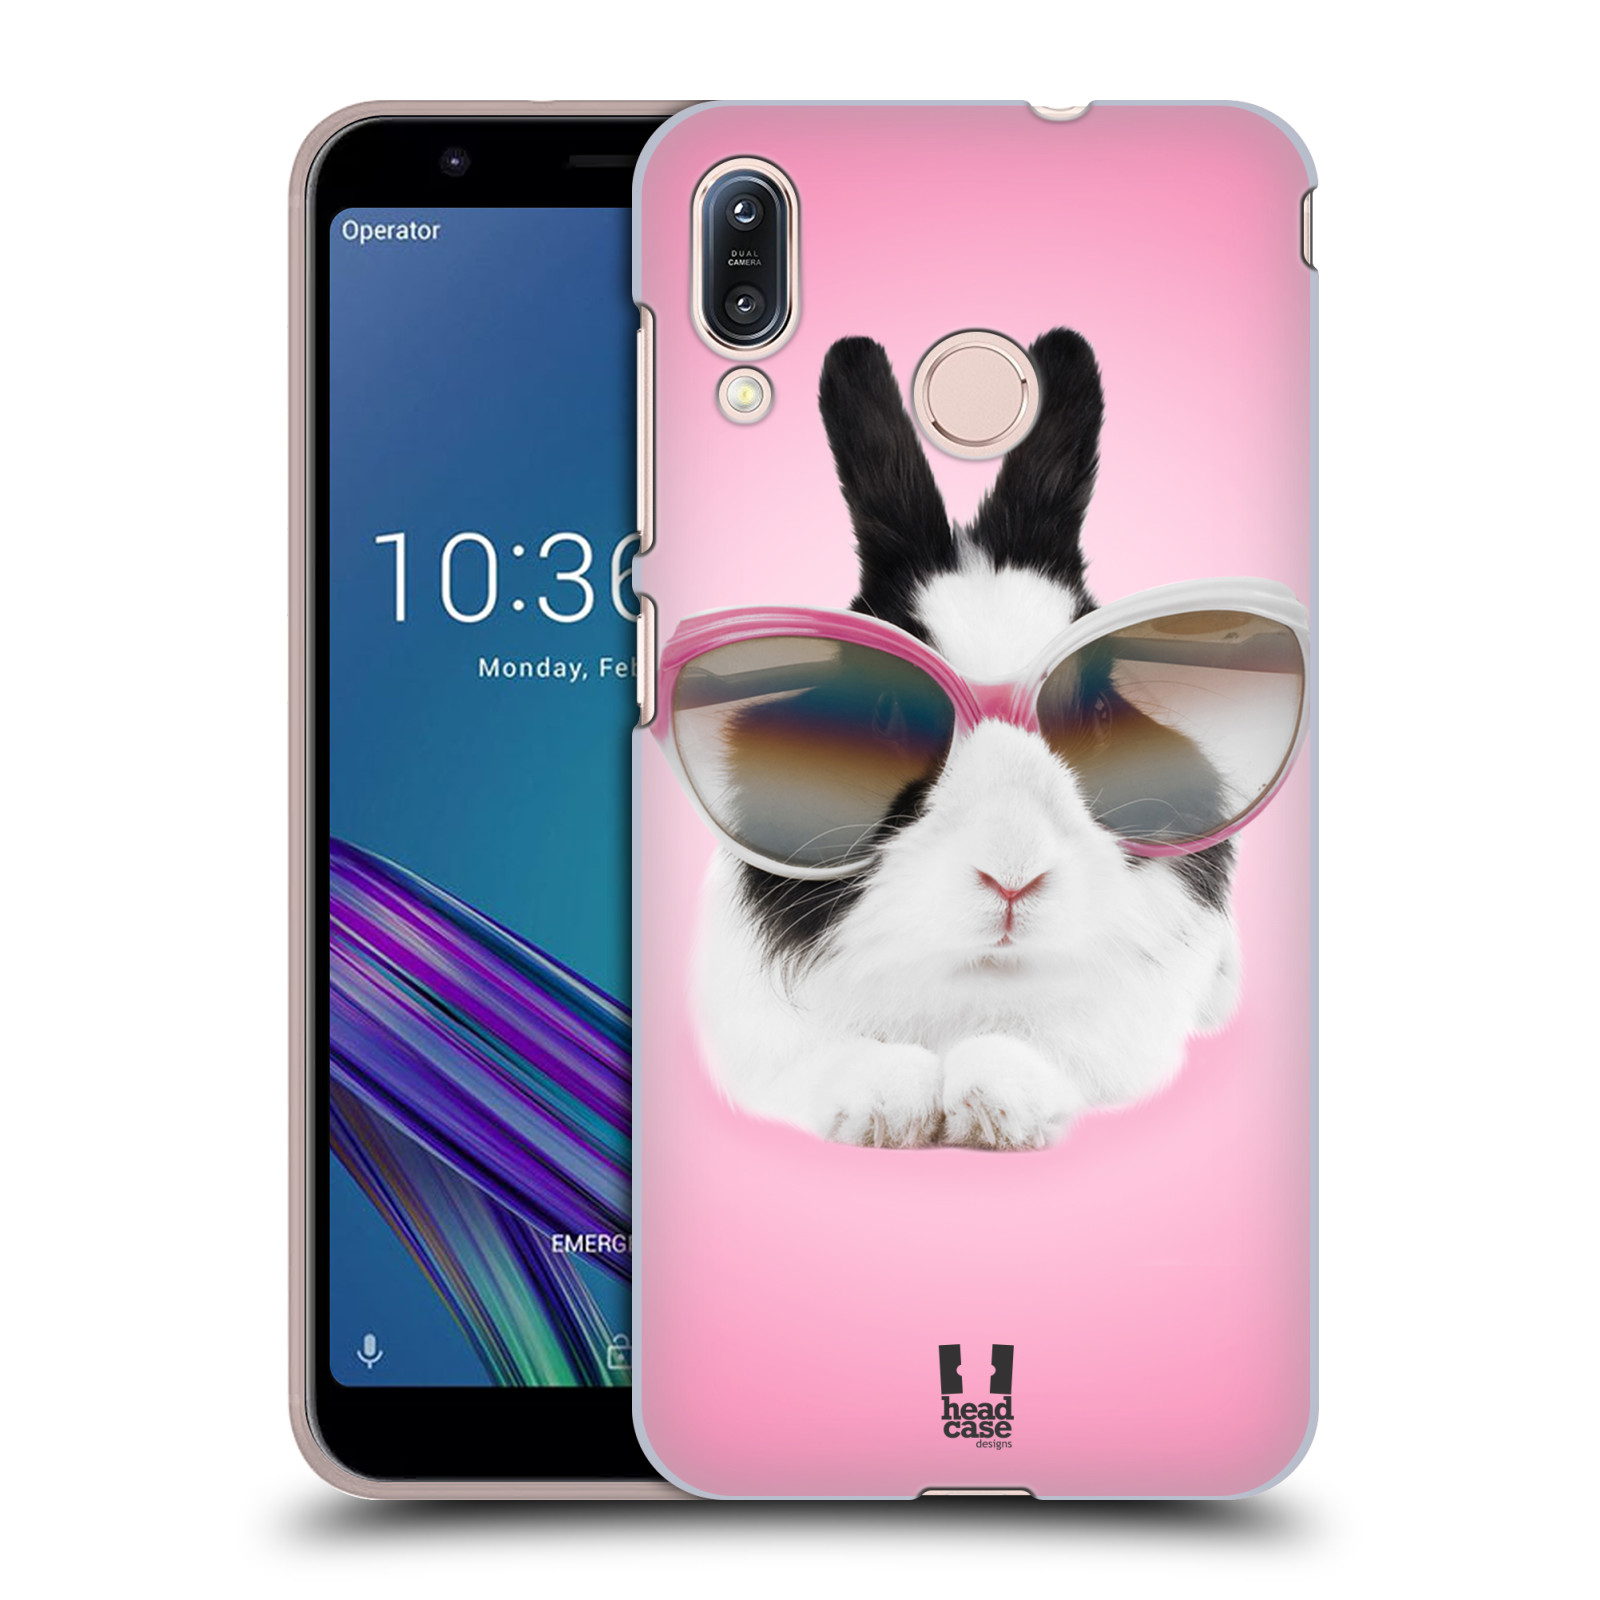 Pouzdro na mobil Asus Zenfone Max M1 (ZB555KL) - HEAD CASE - vzor Legrační zvířátka roztomilý králíček s brýlemi růžová